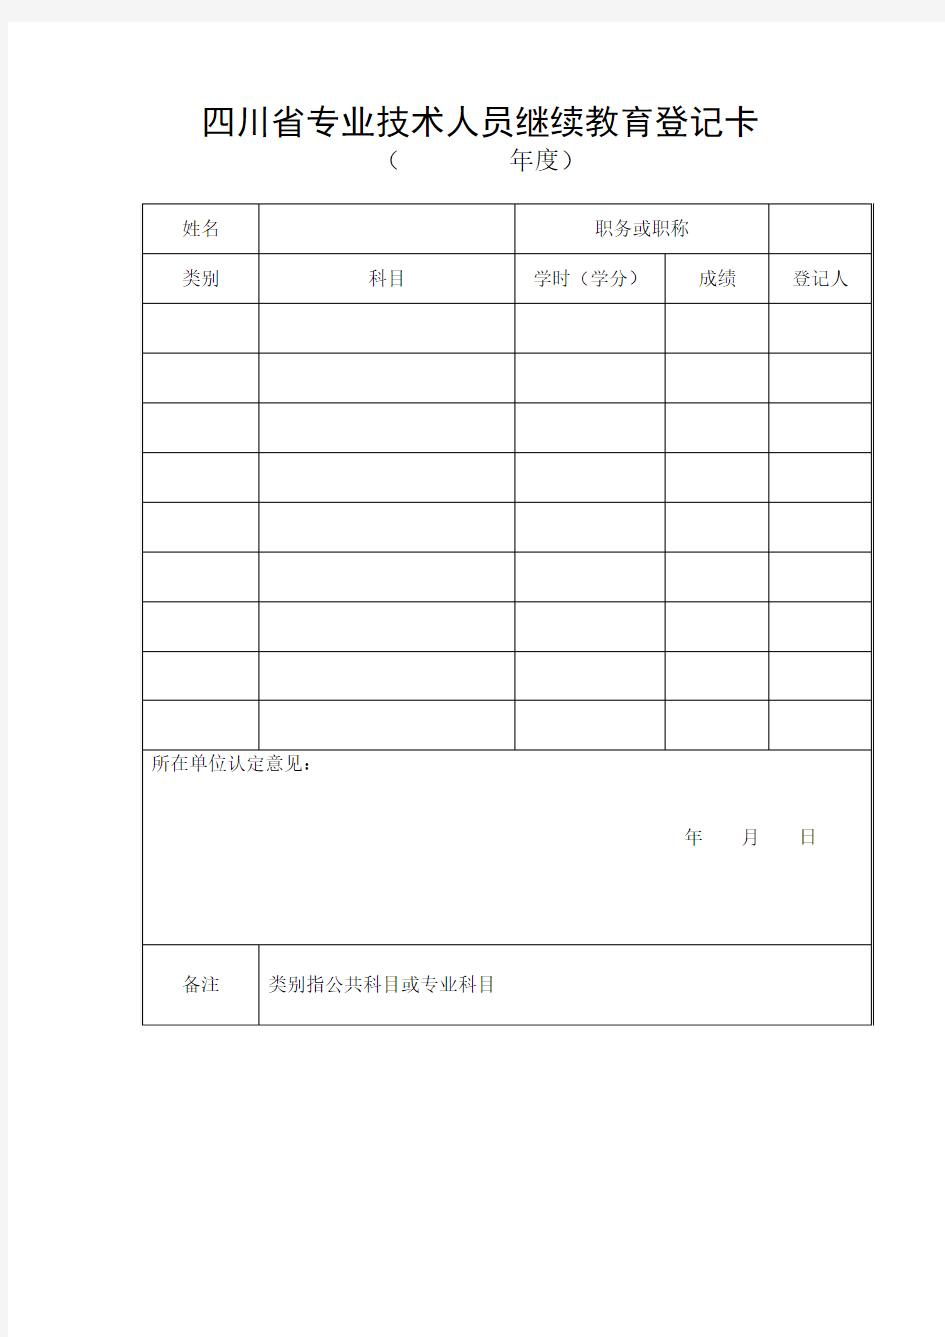 四川省专业技术人员继续教育登记卡